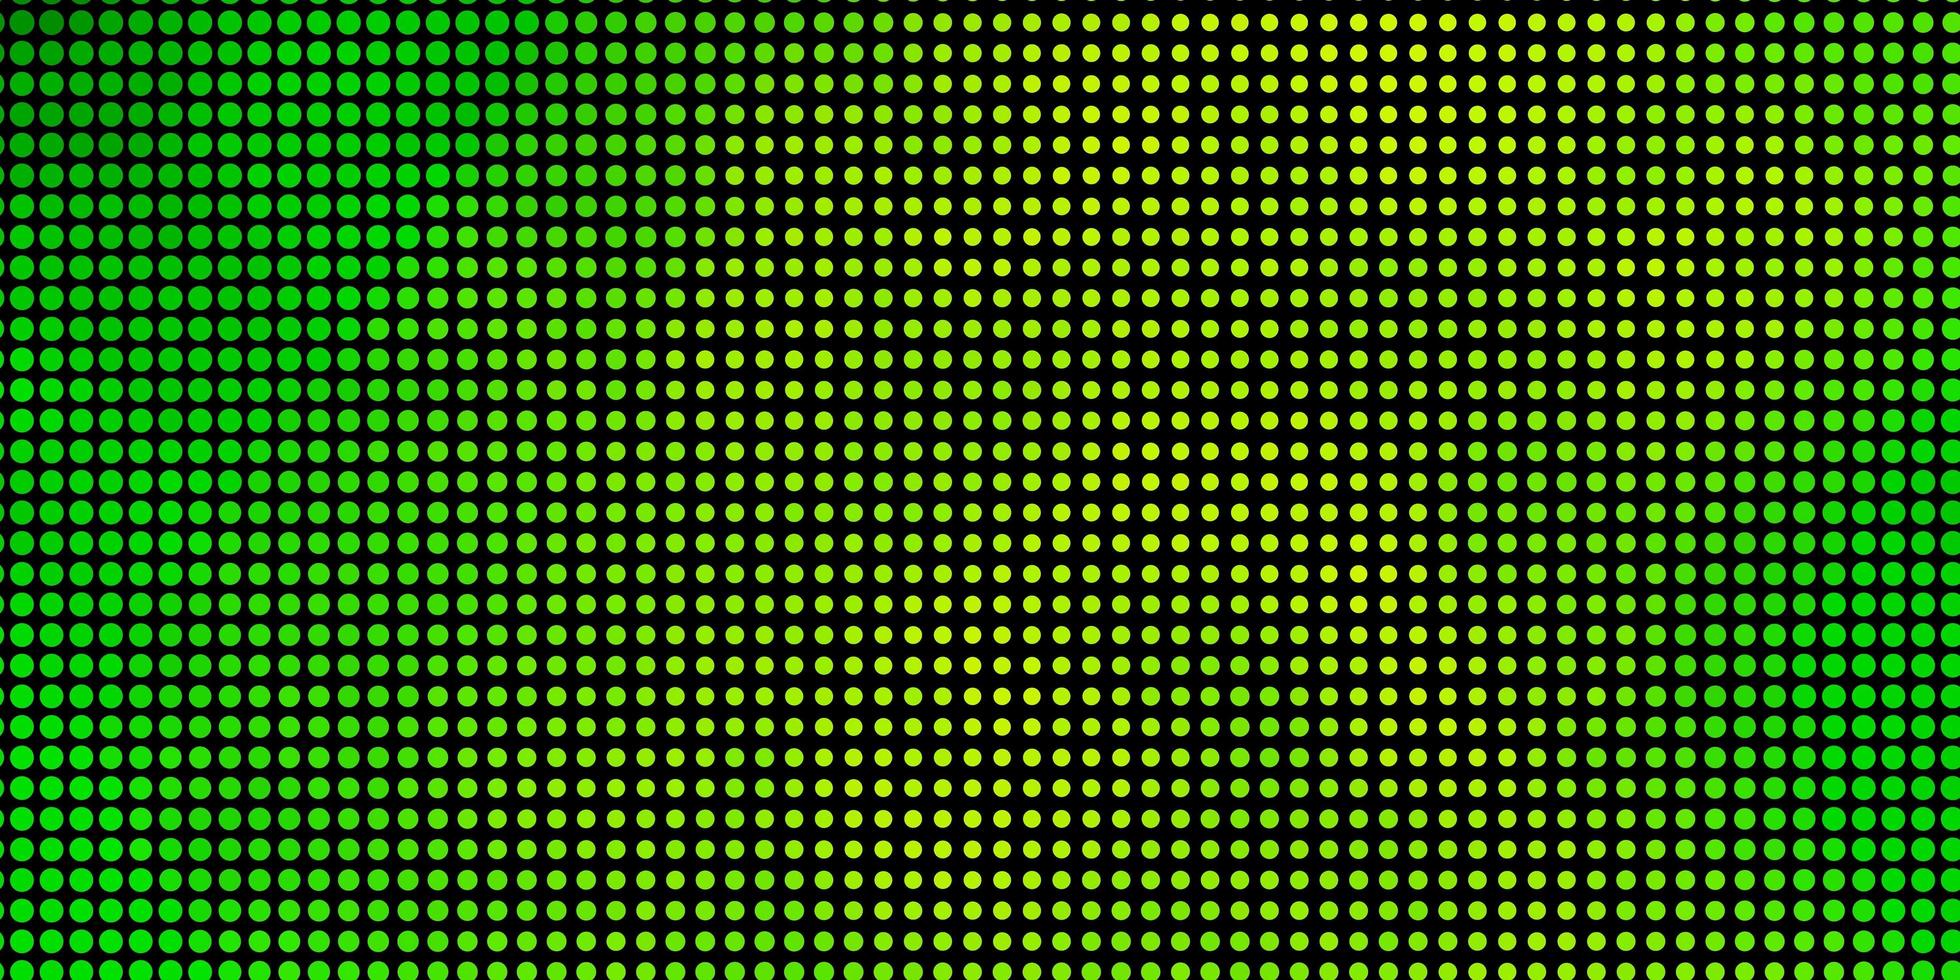 texture vettoriale verde chiaro, giallo con cerchi. dischi colorati astratti su sfondo sfumato semplice. design per i tuoi annunci pubblicitari.